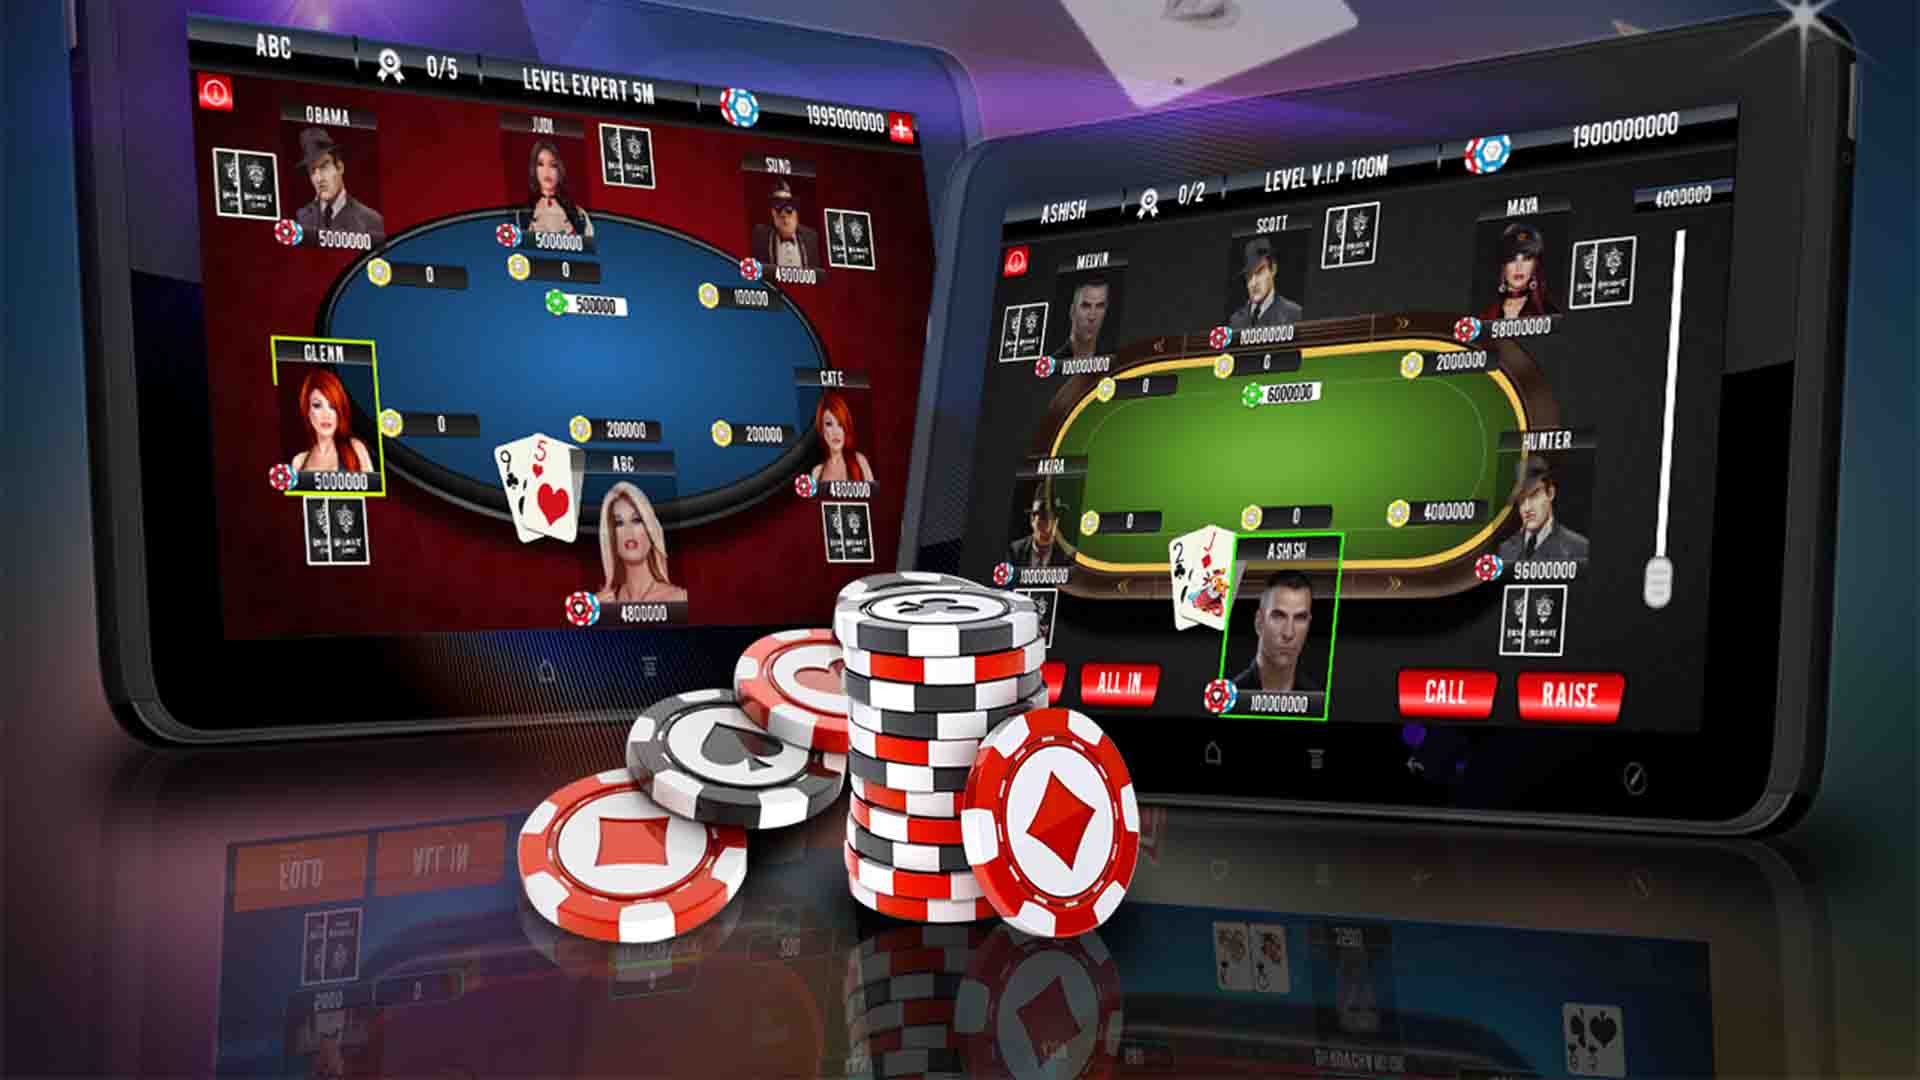 Онлайн казино демо игри – предимства и функционалност с един поглед